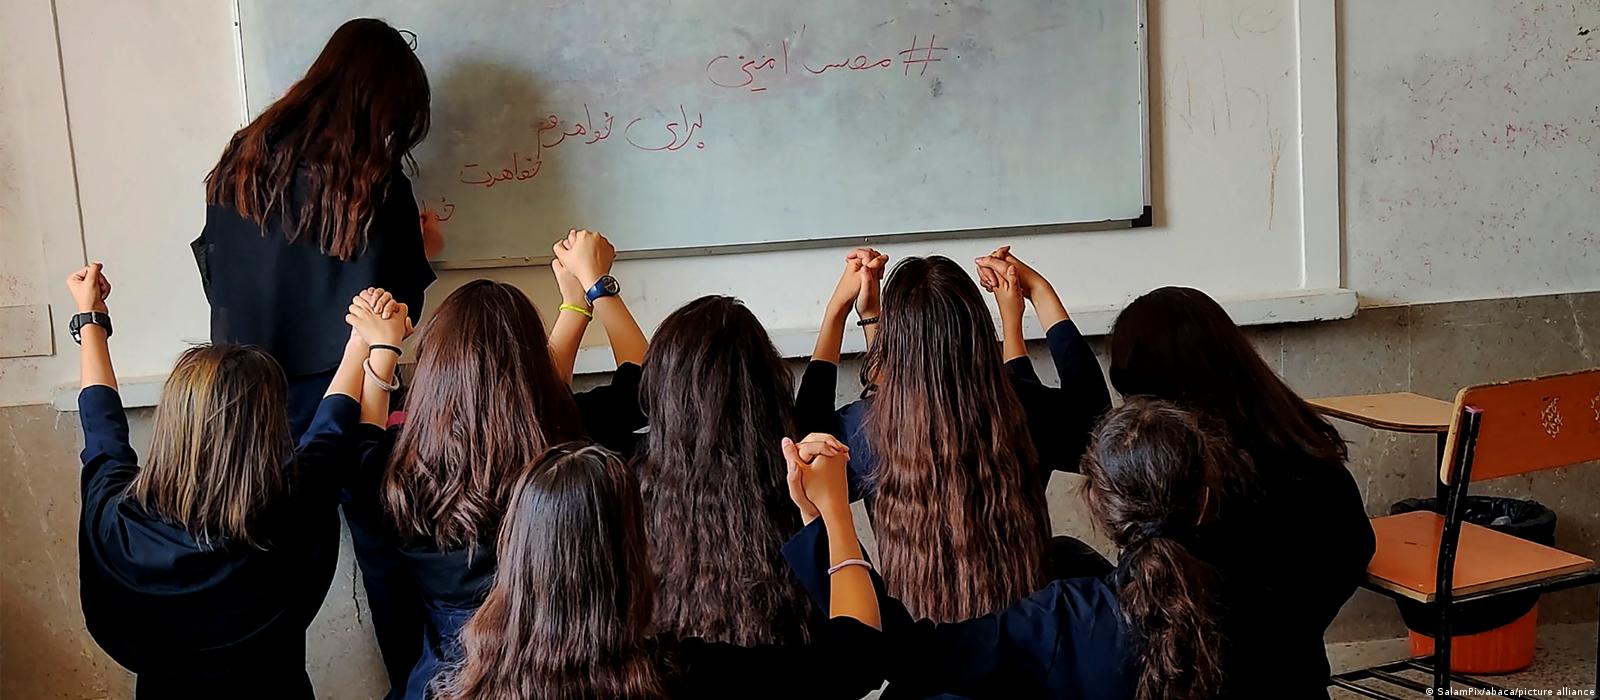 Schulmädchen im Iran © SalamPix/abaca/picture alliance